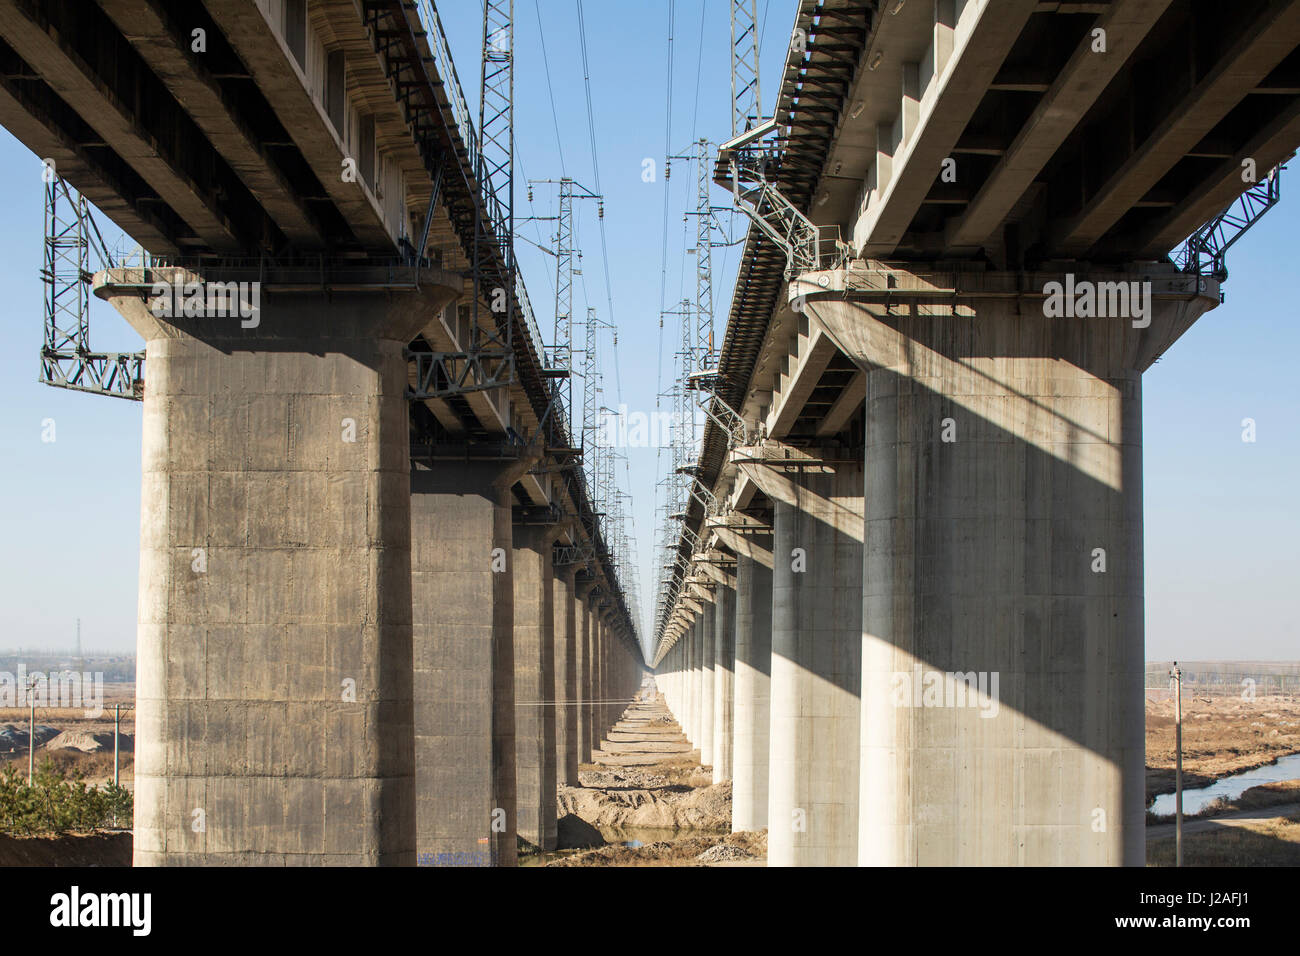 China, Provinz Shanxi, Datong, parallele Linien von Betonstützen erhöhten high-Speed-Gleise Stockfoto